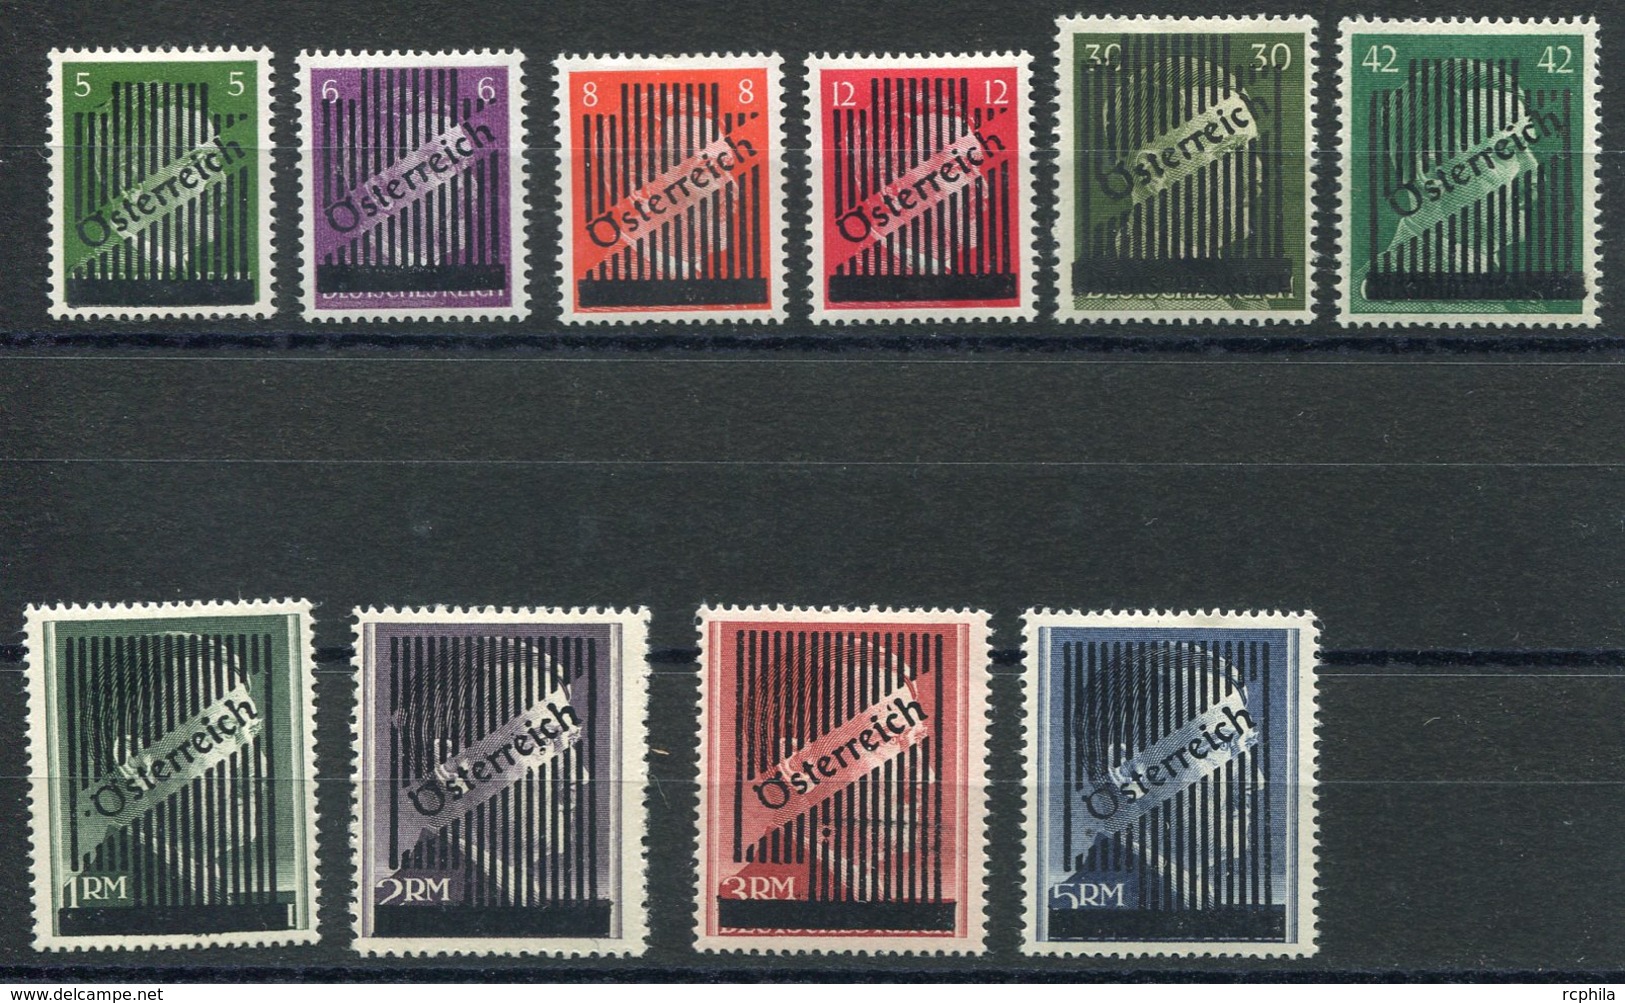 RC 15285 AUTRICHE N° 543 / 552 SÉRIE TIMBRES ALLEMANDS SURCHARGÉS COTE 180€ NEUF * MH - Unused Stamps